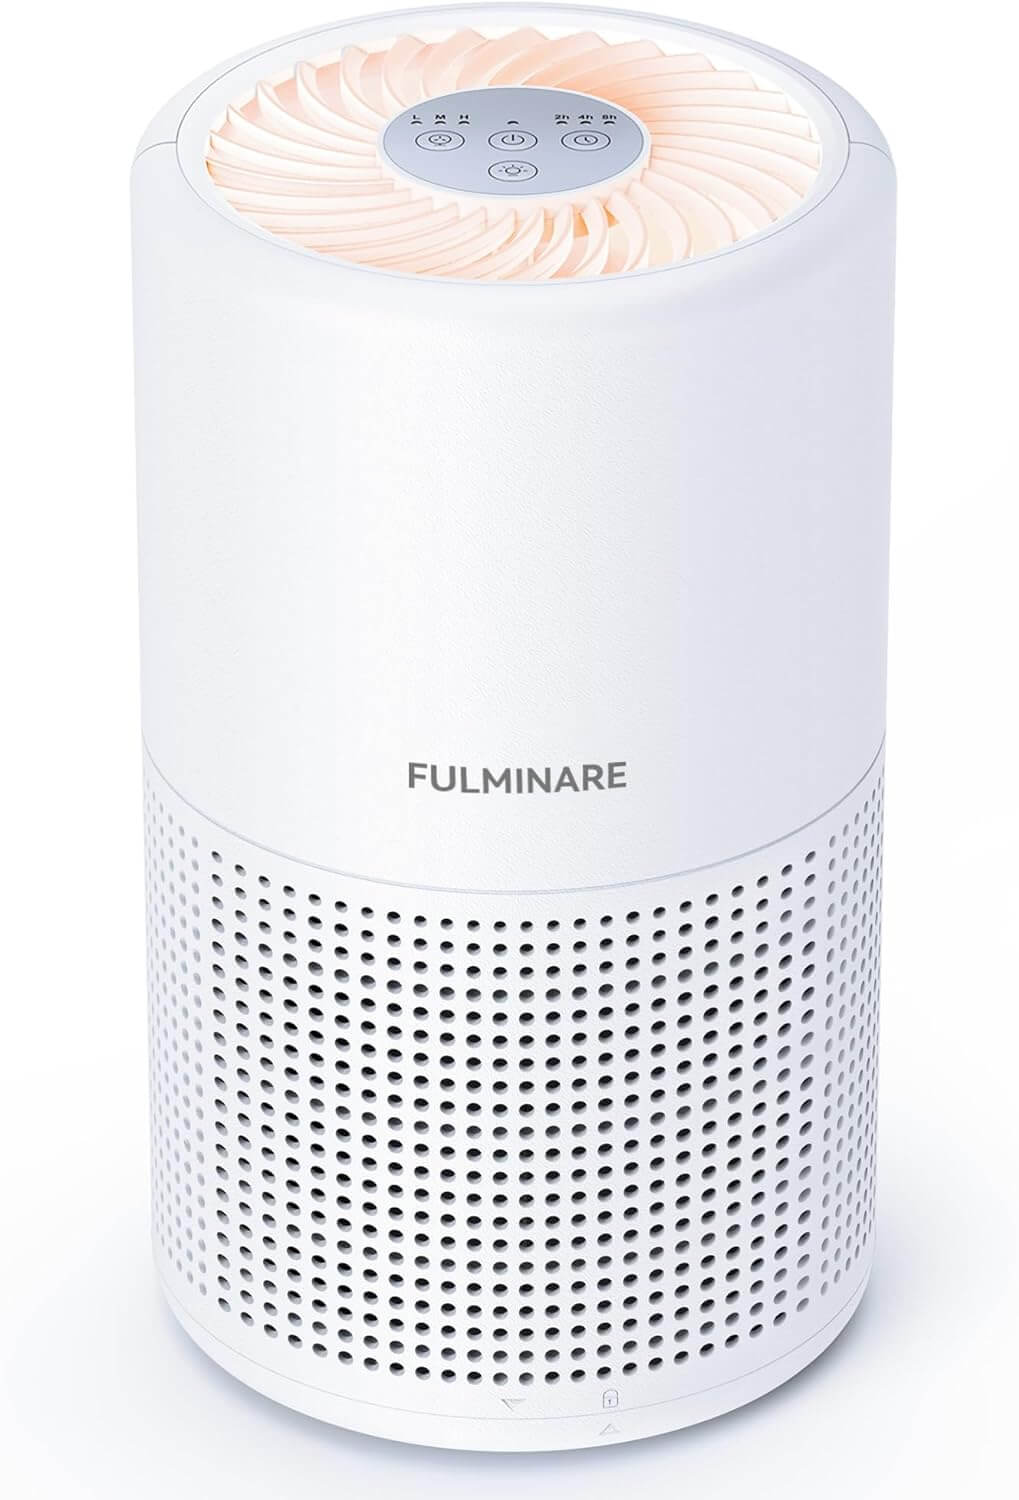 FULMINARE PU-P05 Air Purifier (White)